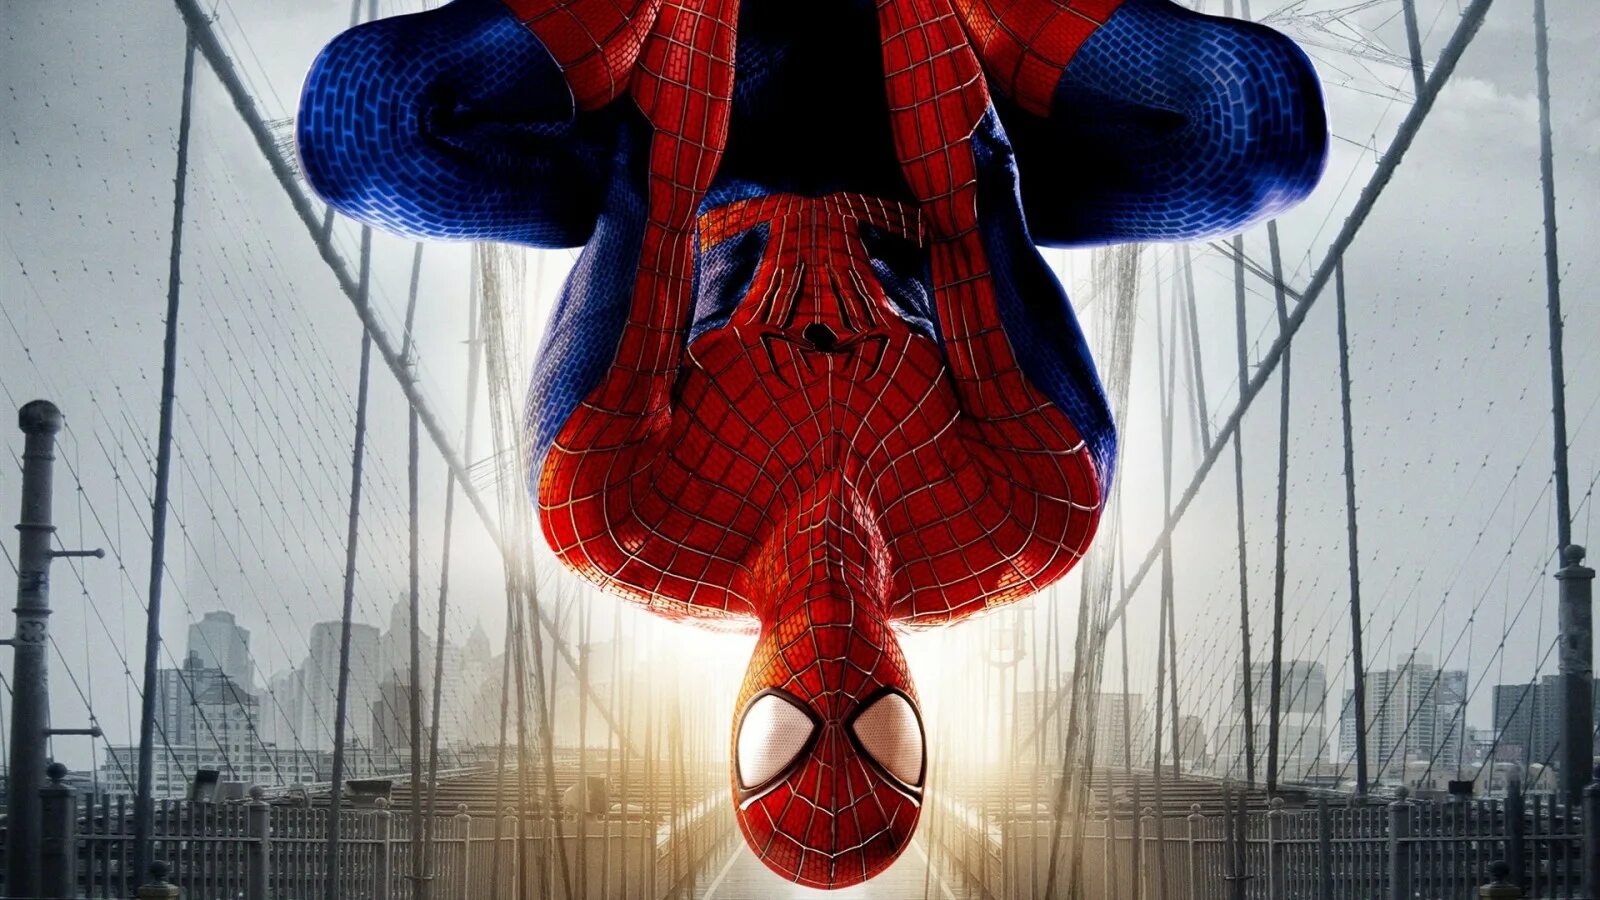 The amazing Spider-man (игра, 2012). Spider-man 2 часть. Фильм новый человек паук 1. Эмэйзинг Спайдер Мэн.